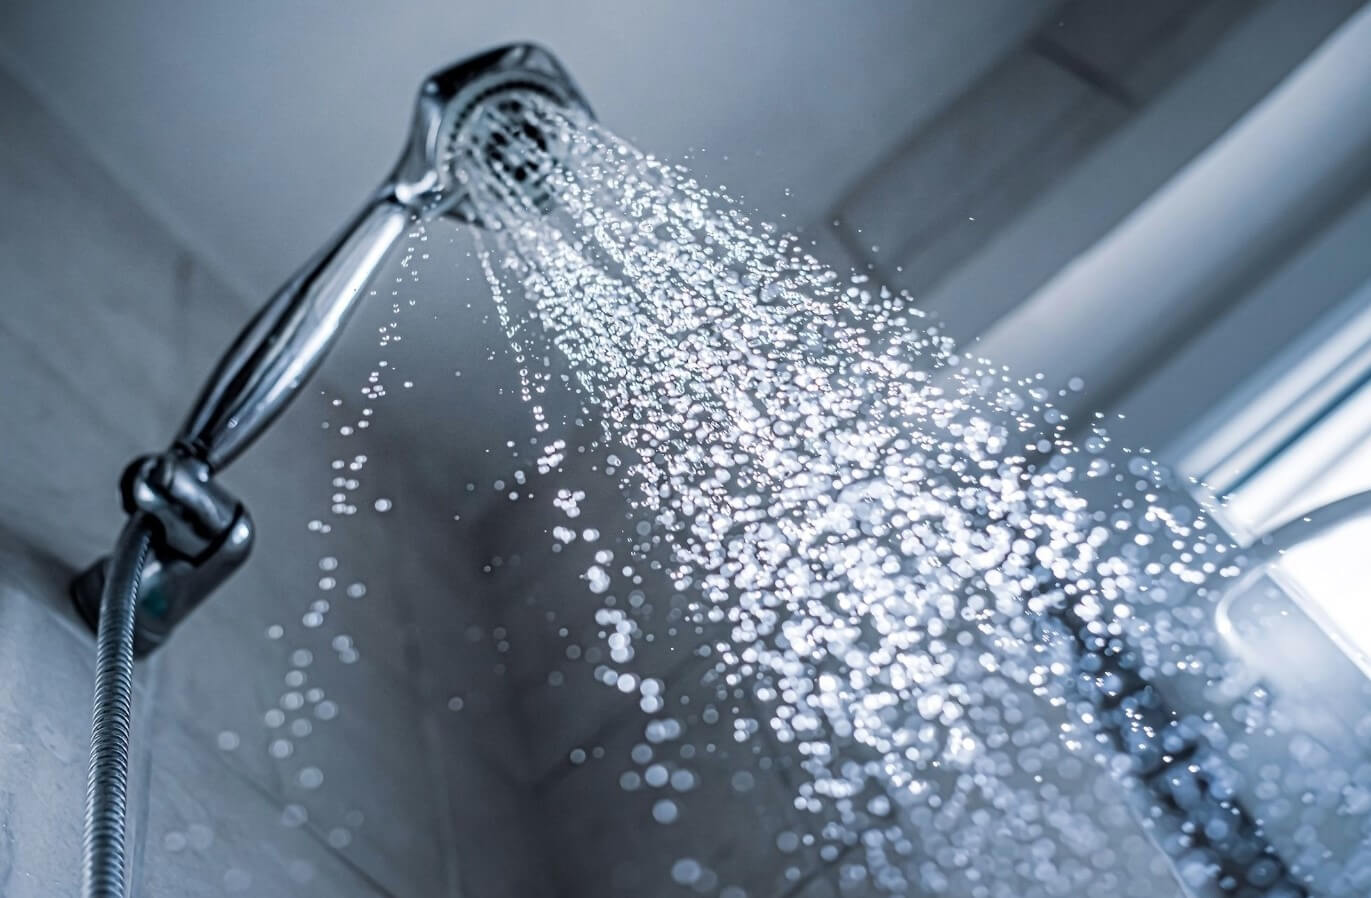 Части тела, которые нужно мыть каждый день — доказано наукой. Ежедневно принимать ванну или душ не рекомендуется, но за гигиеной некоторых частей тела нужно тщательно следить. Фото.